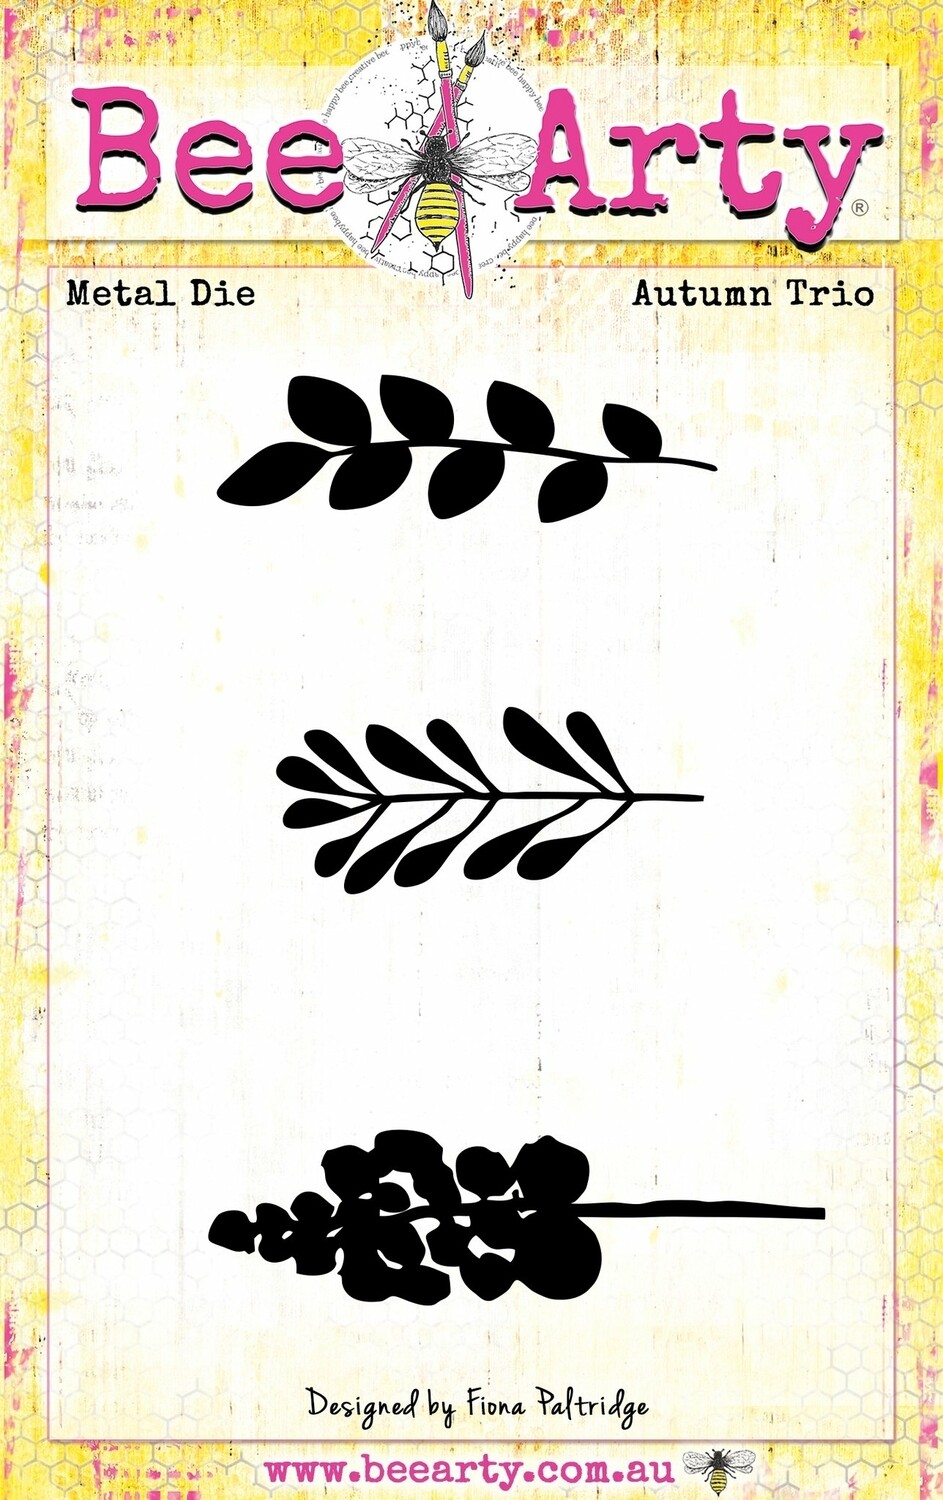 Autumn trio Die